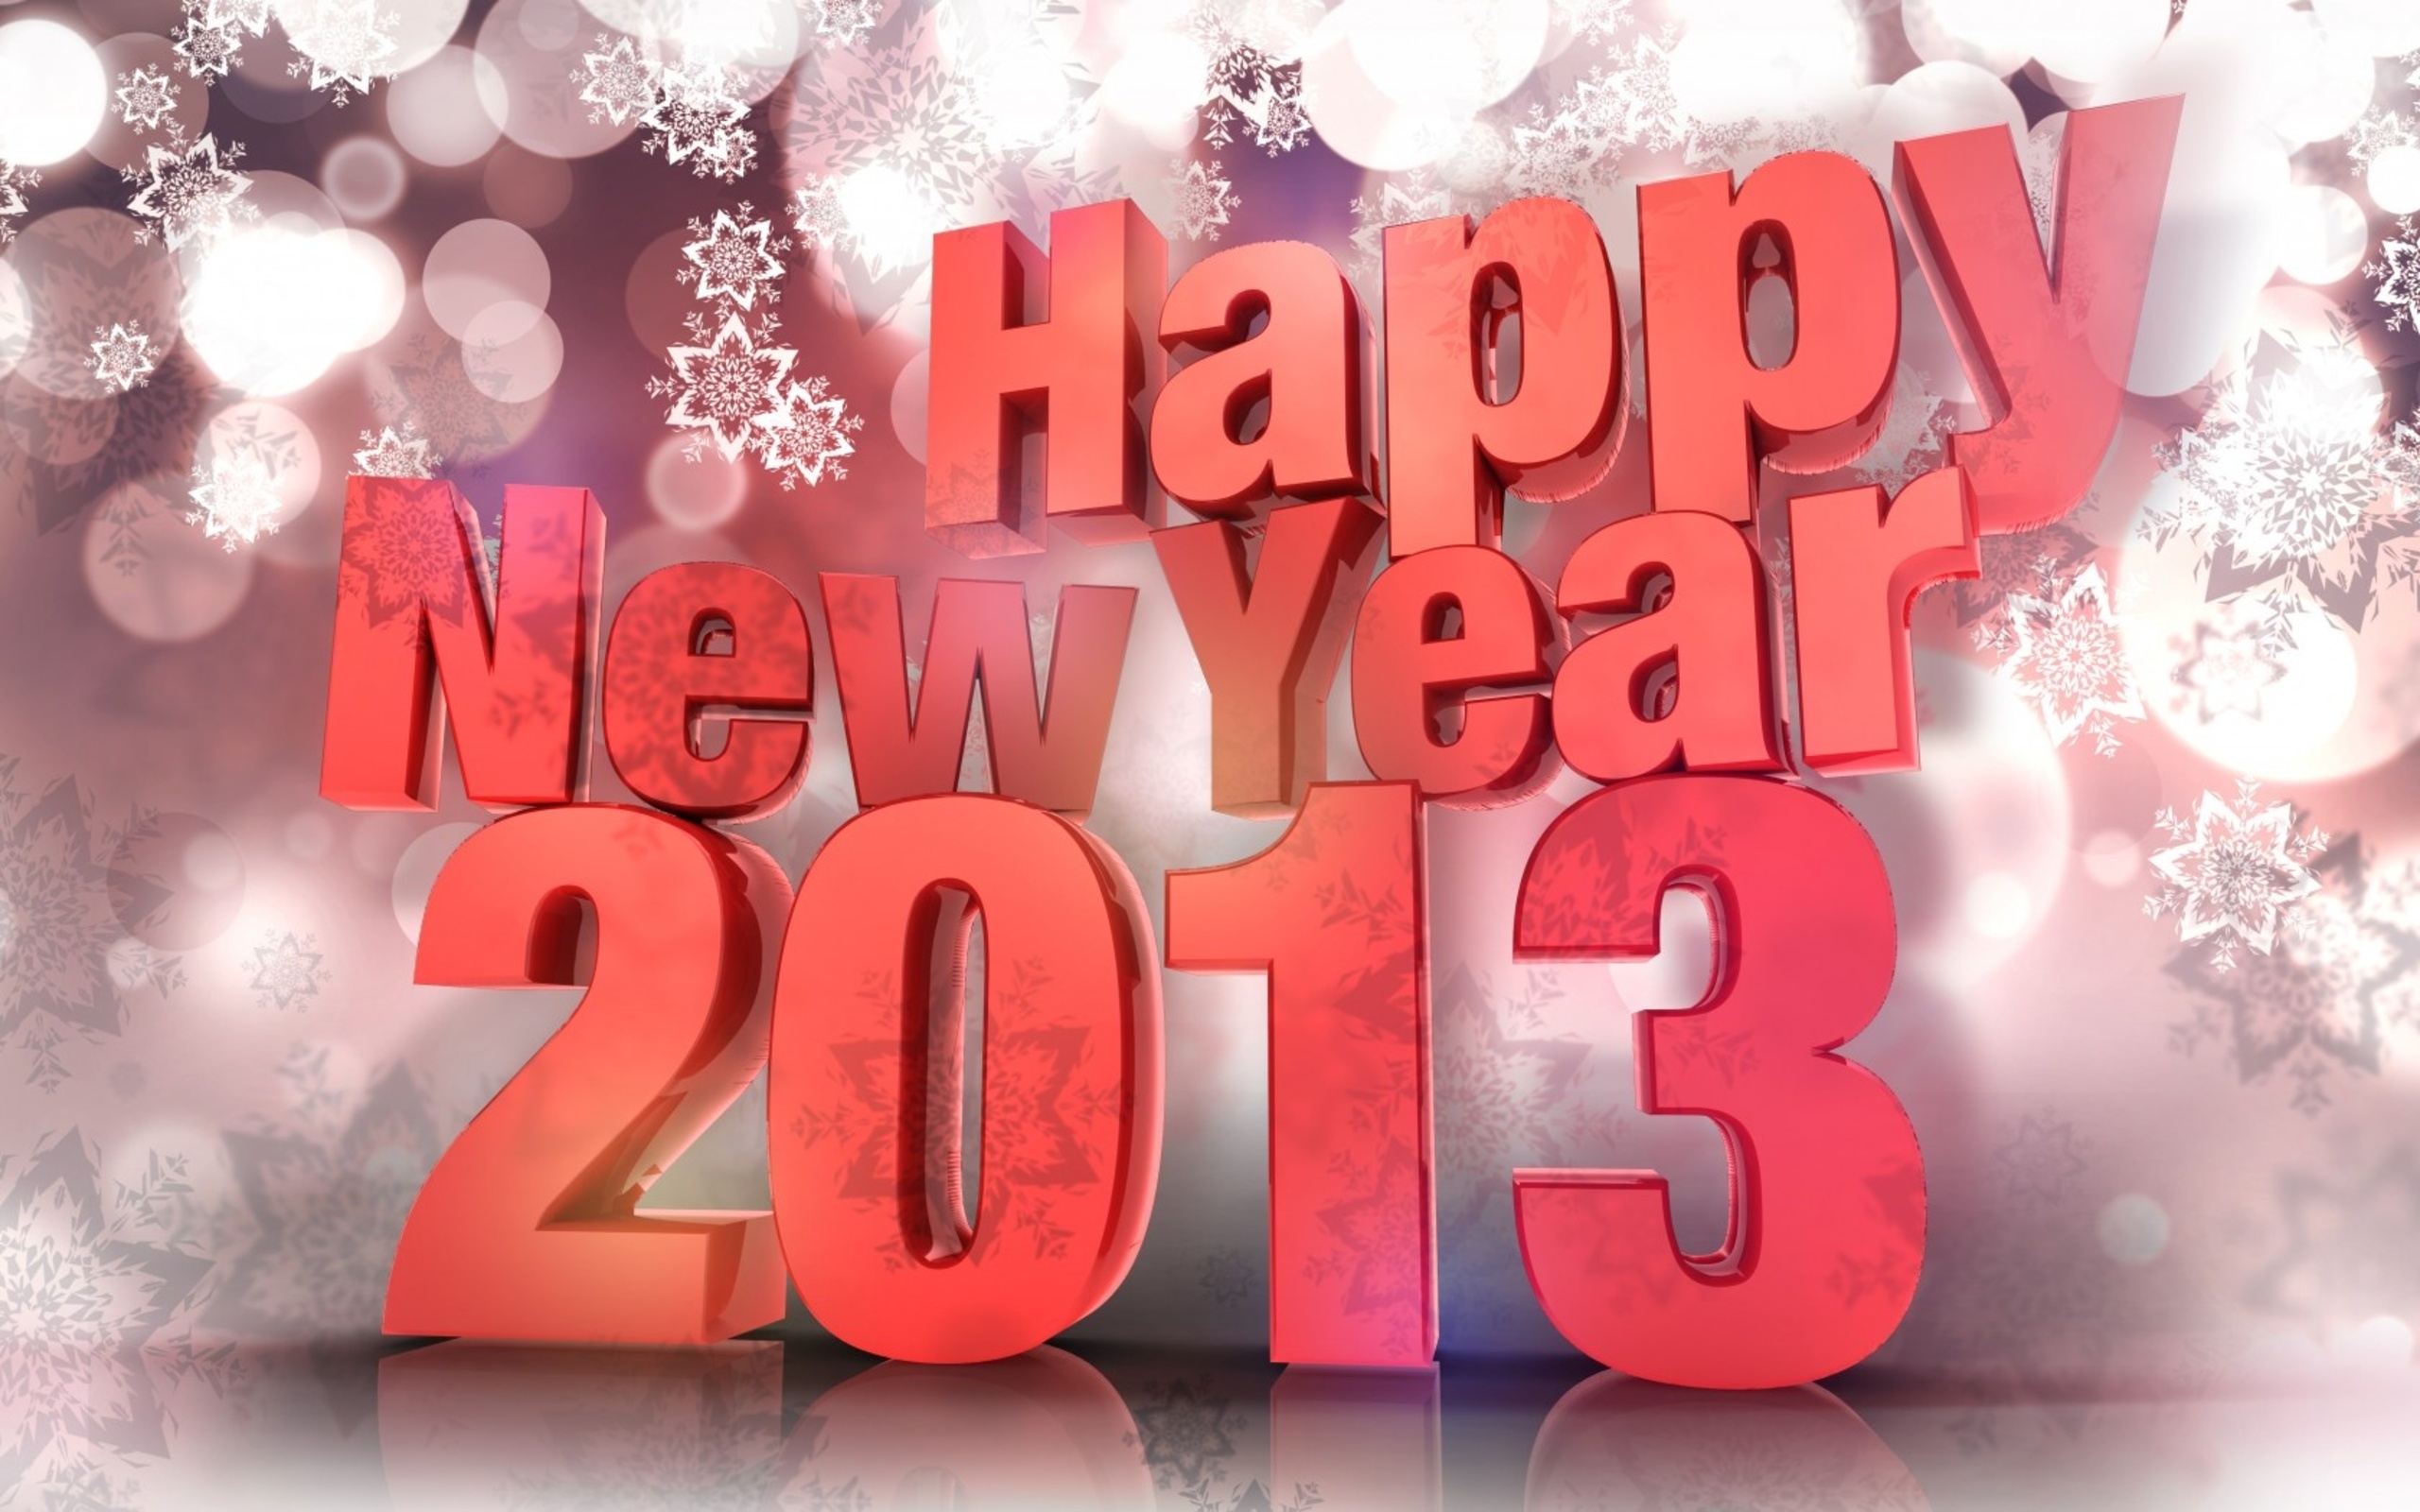 Скачать обои Новый Год 2013 на телефон бесплатно